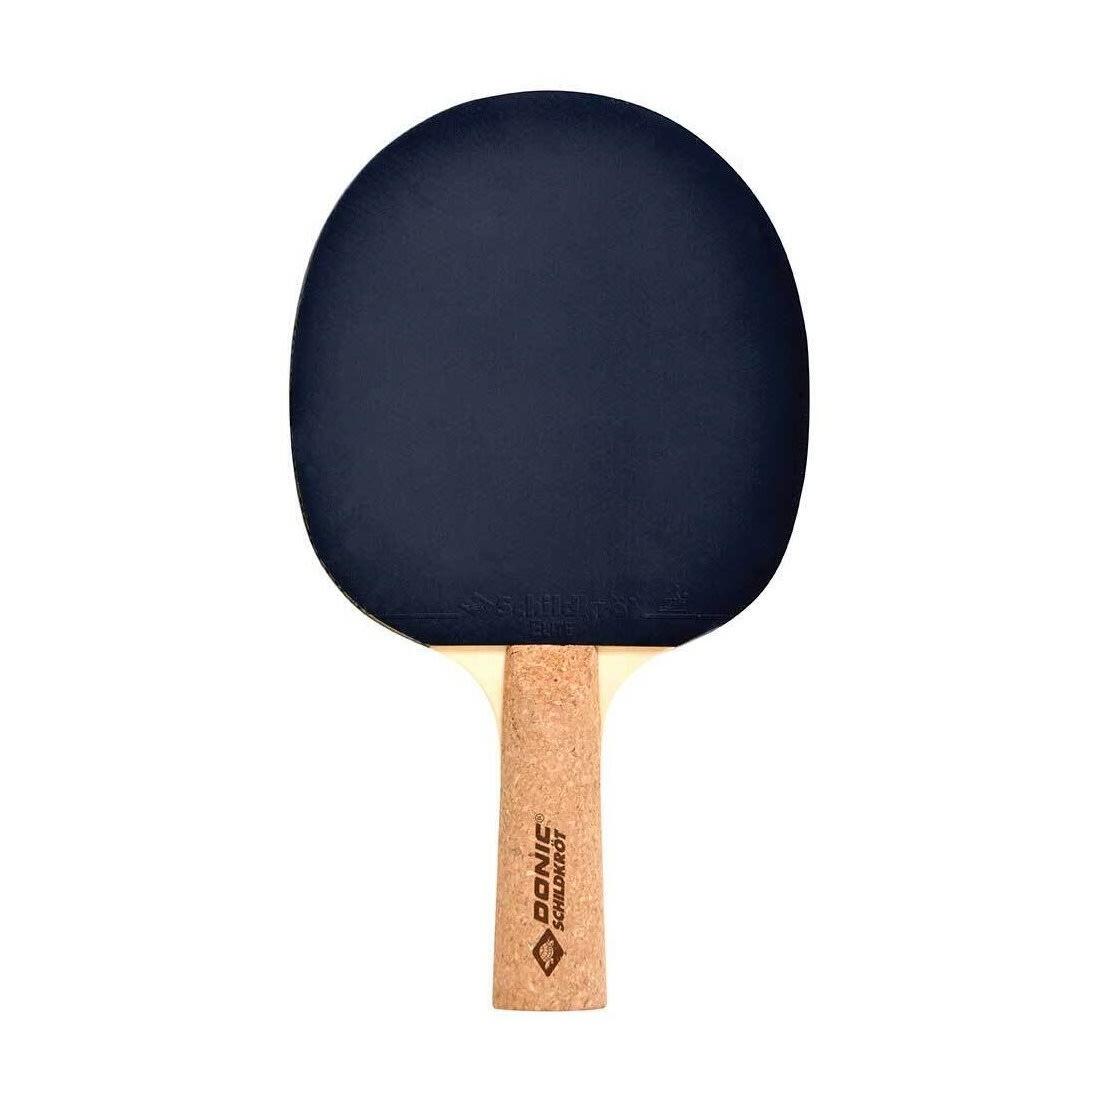 Persson 500 Table Tennis Bat (Black/Beige) 1/3